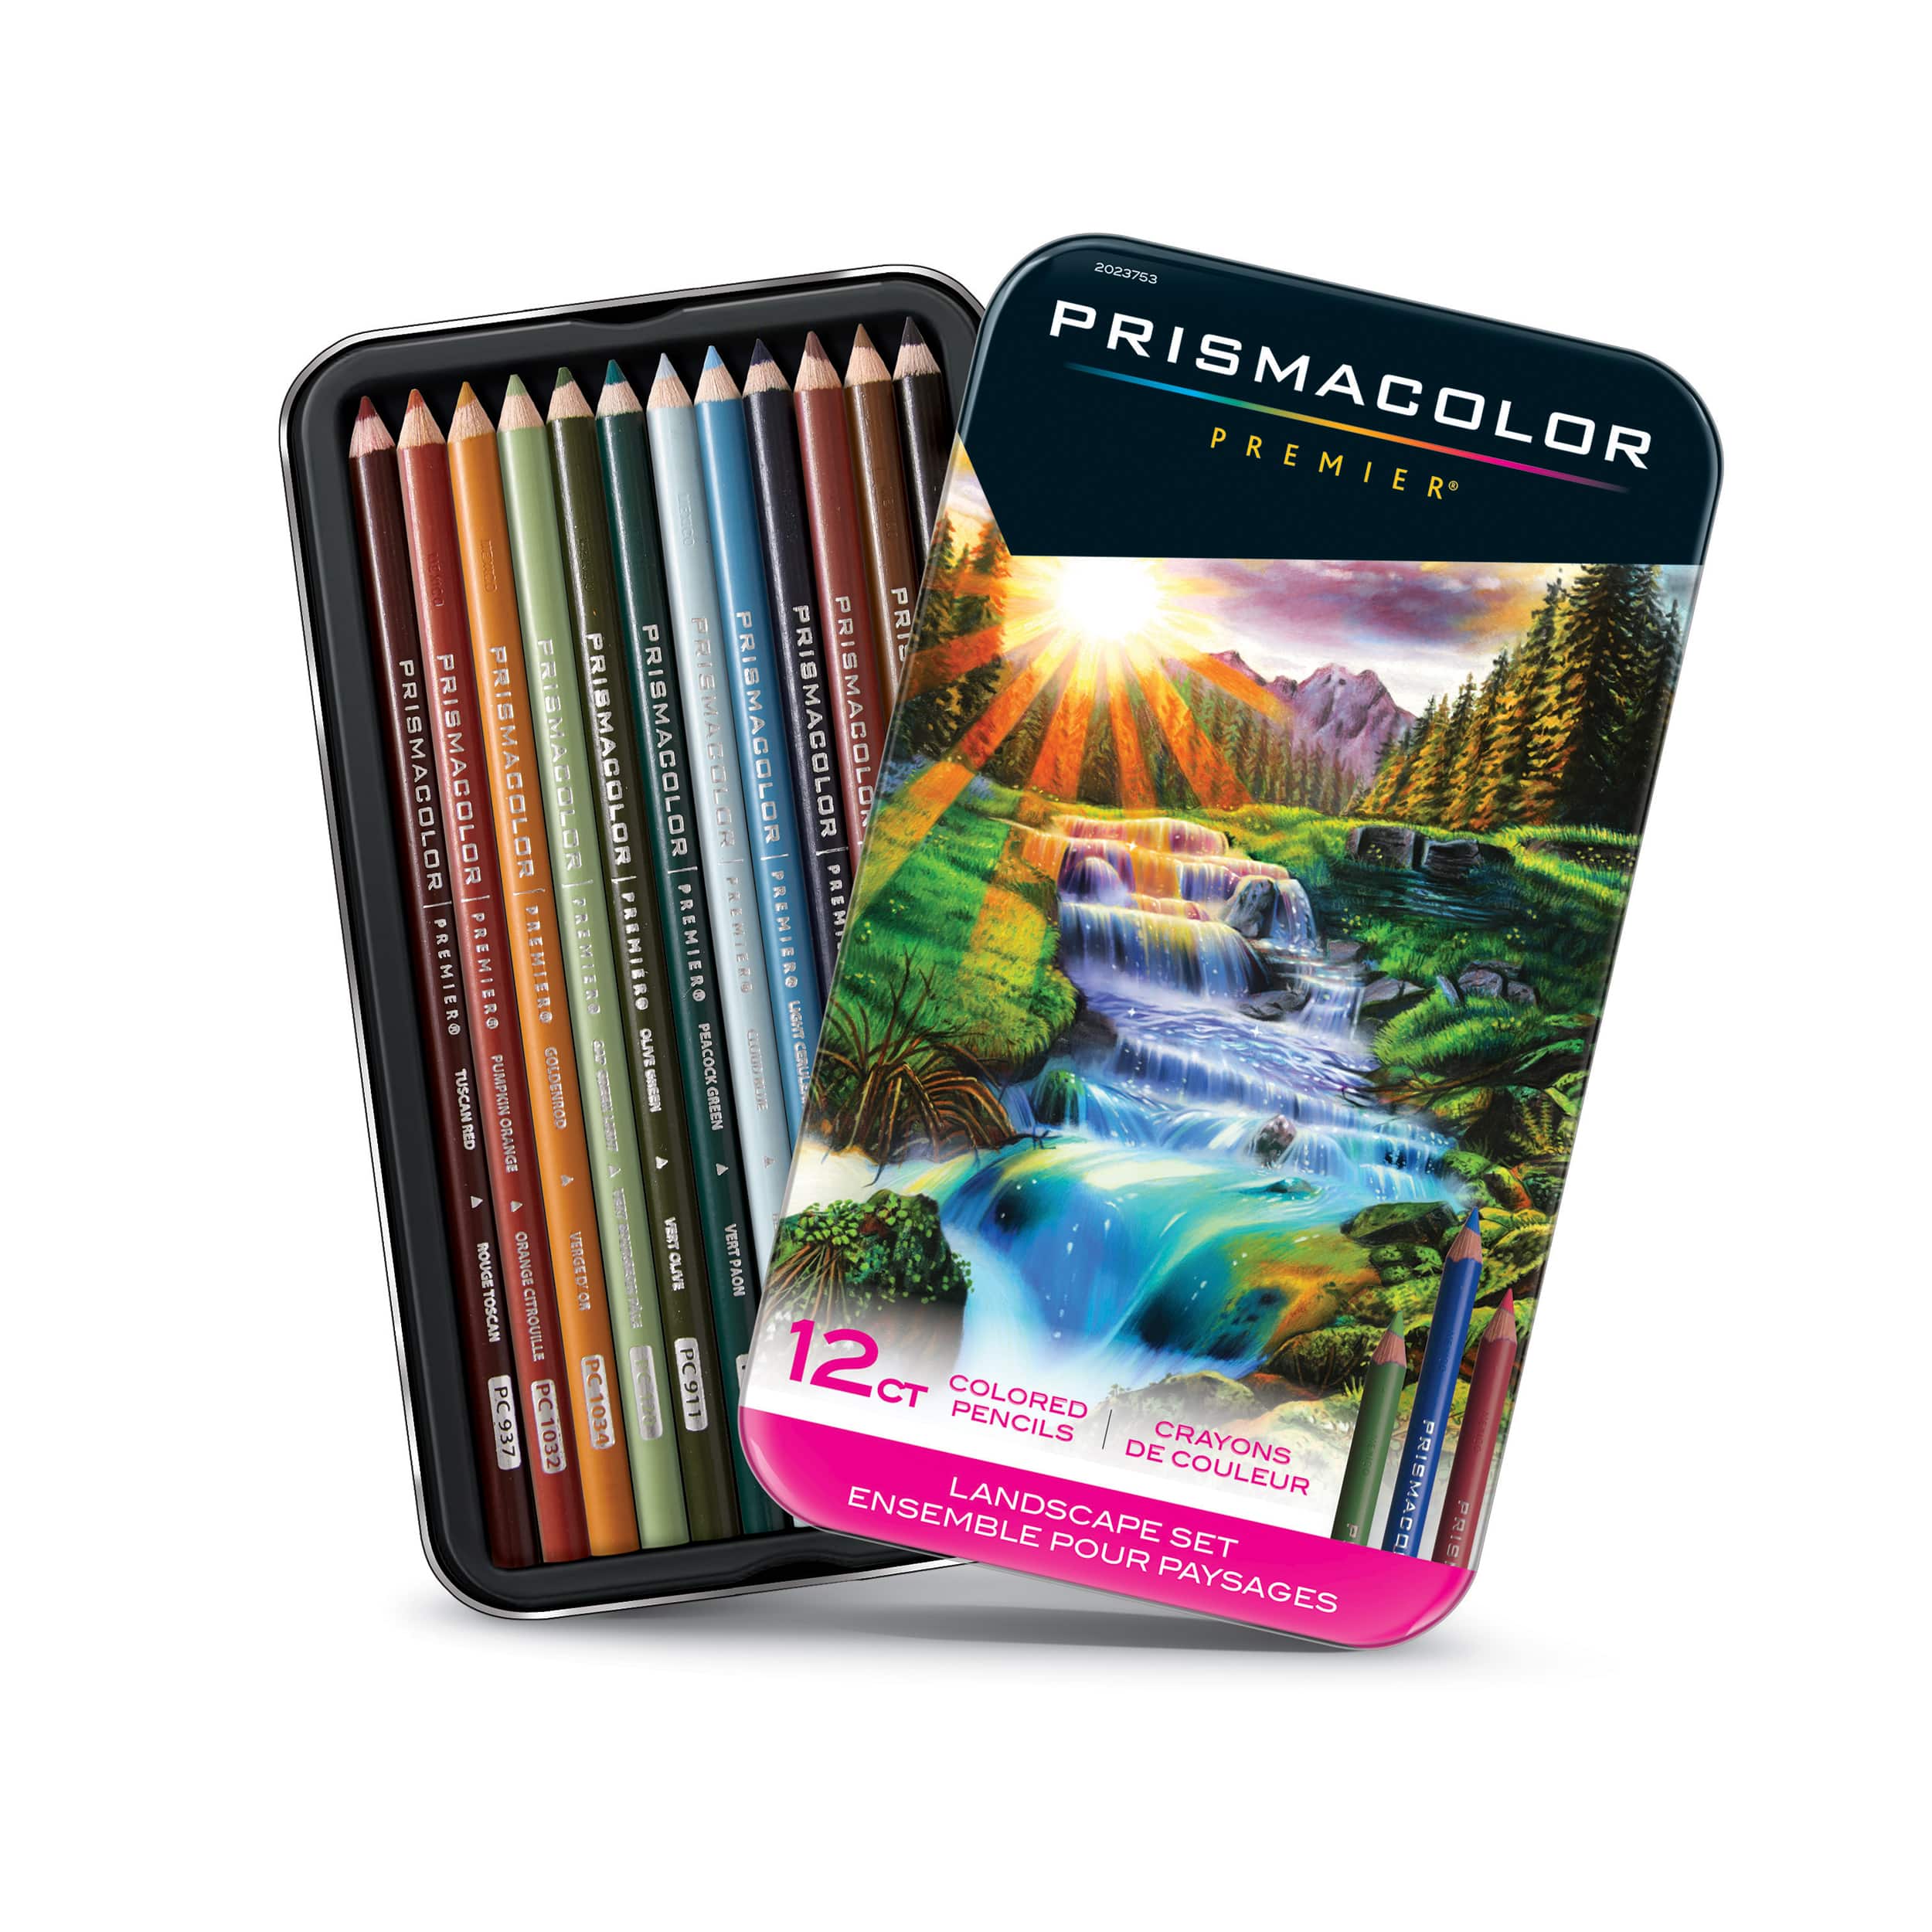 Prismacolor Premier Themed Colored Pencil Set, Landscape - 20105046